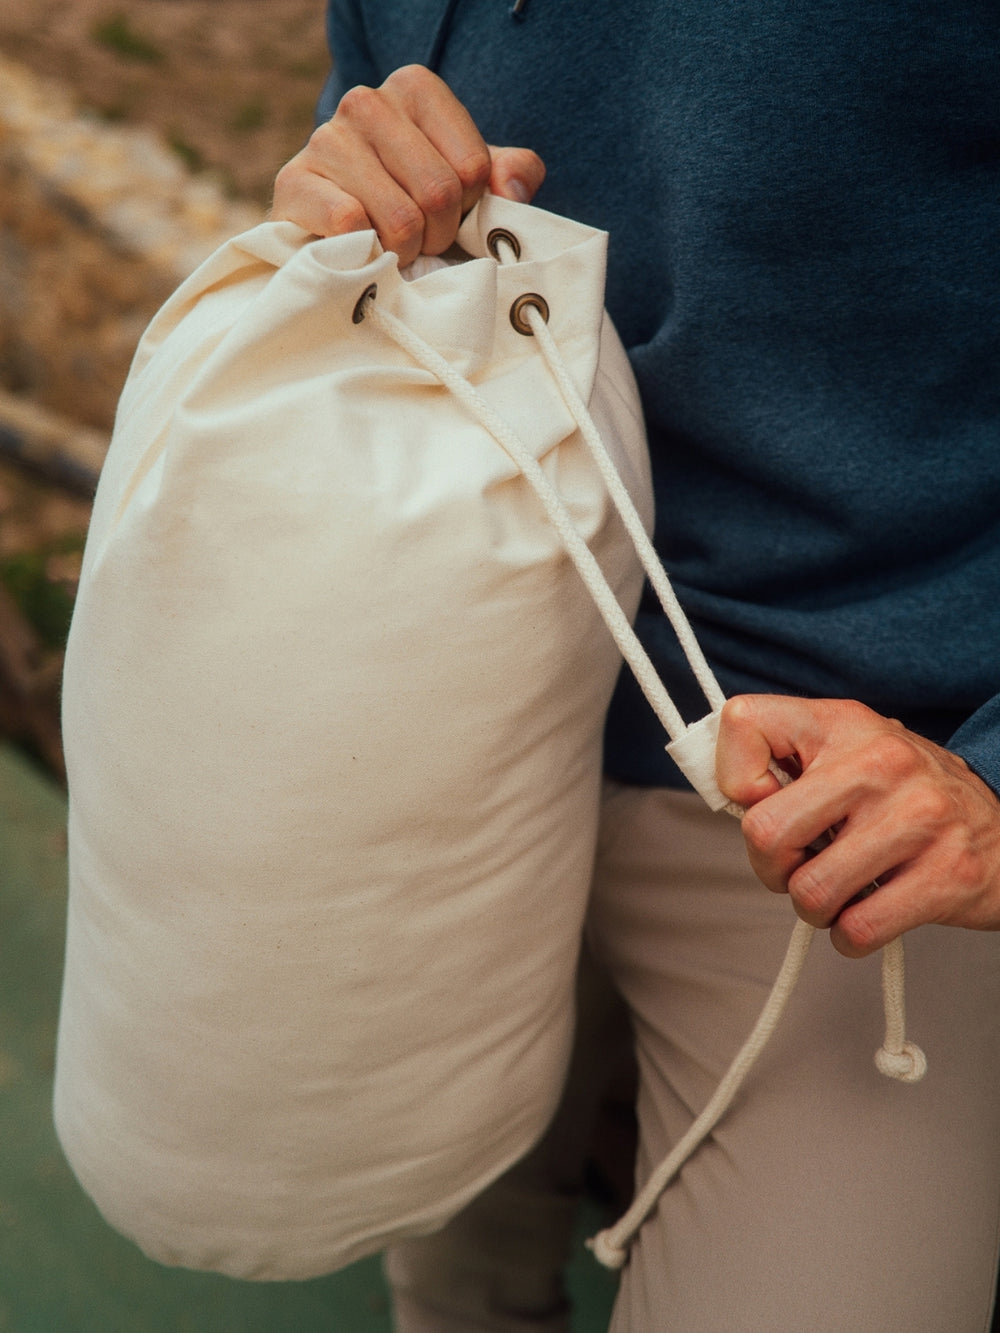 Marine plátěná taška z biobavlny přírodní nebarvená ruce utahují šňůrky na tašce